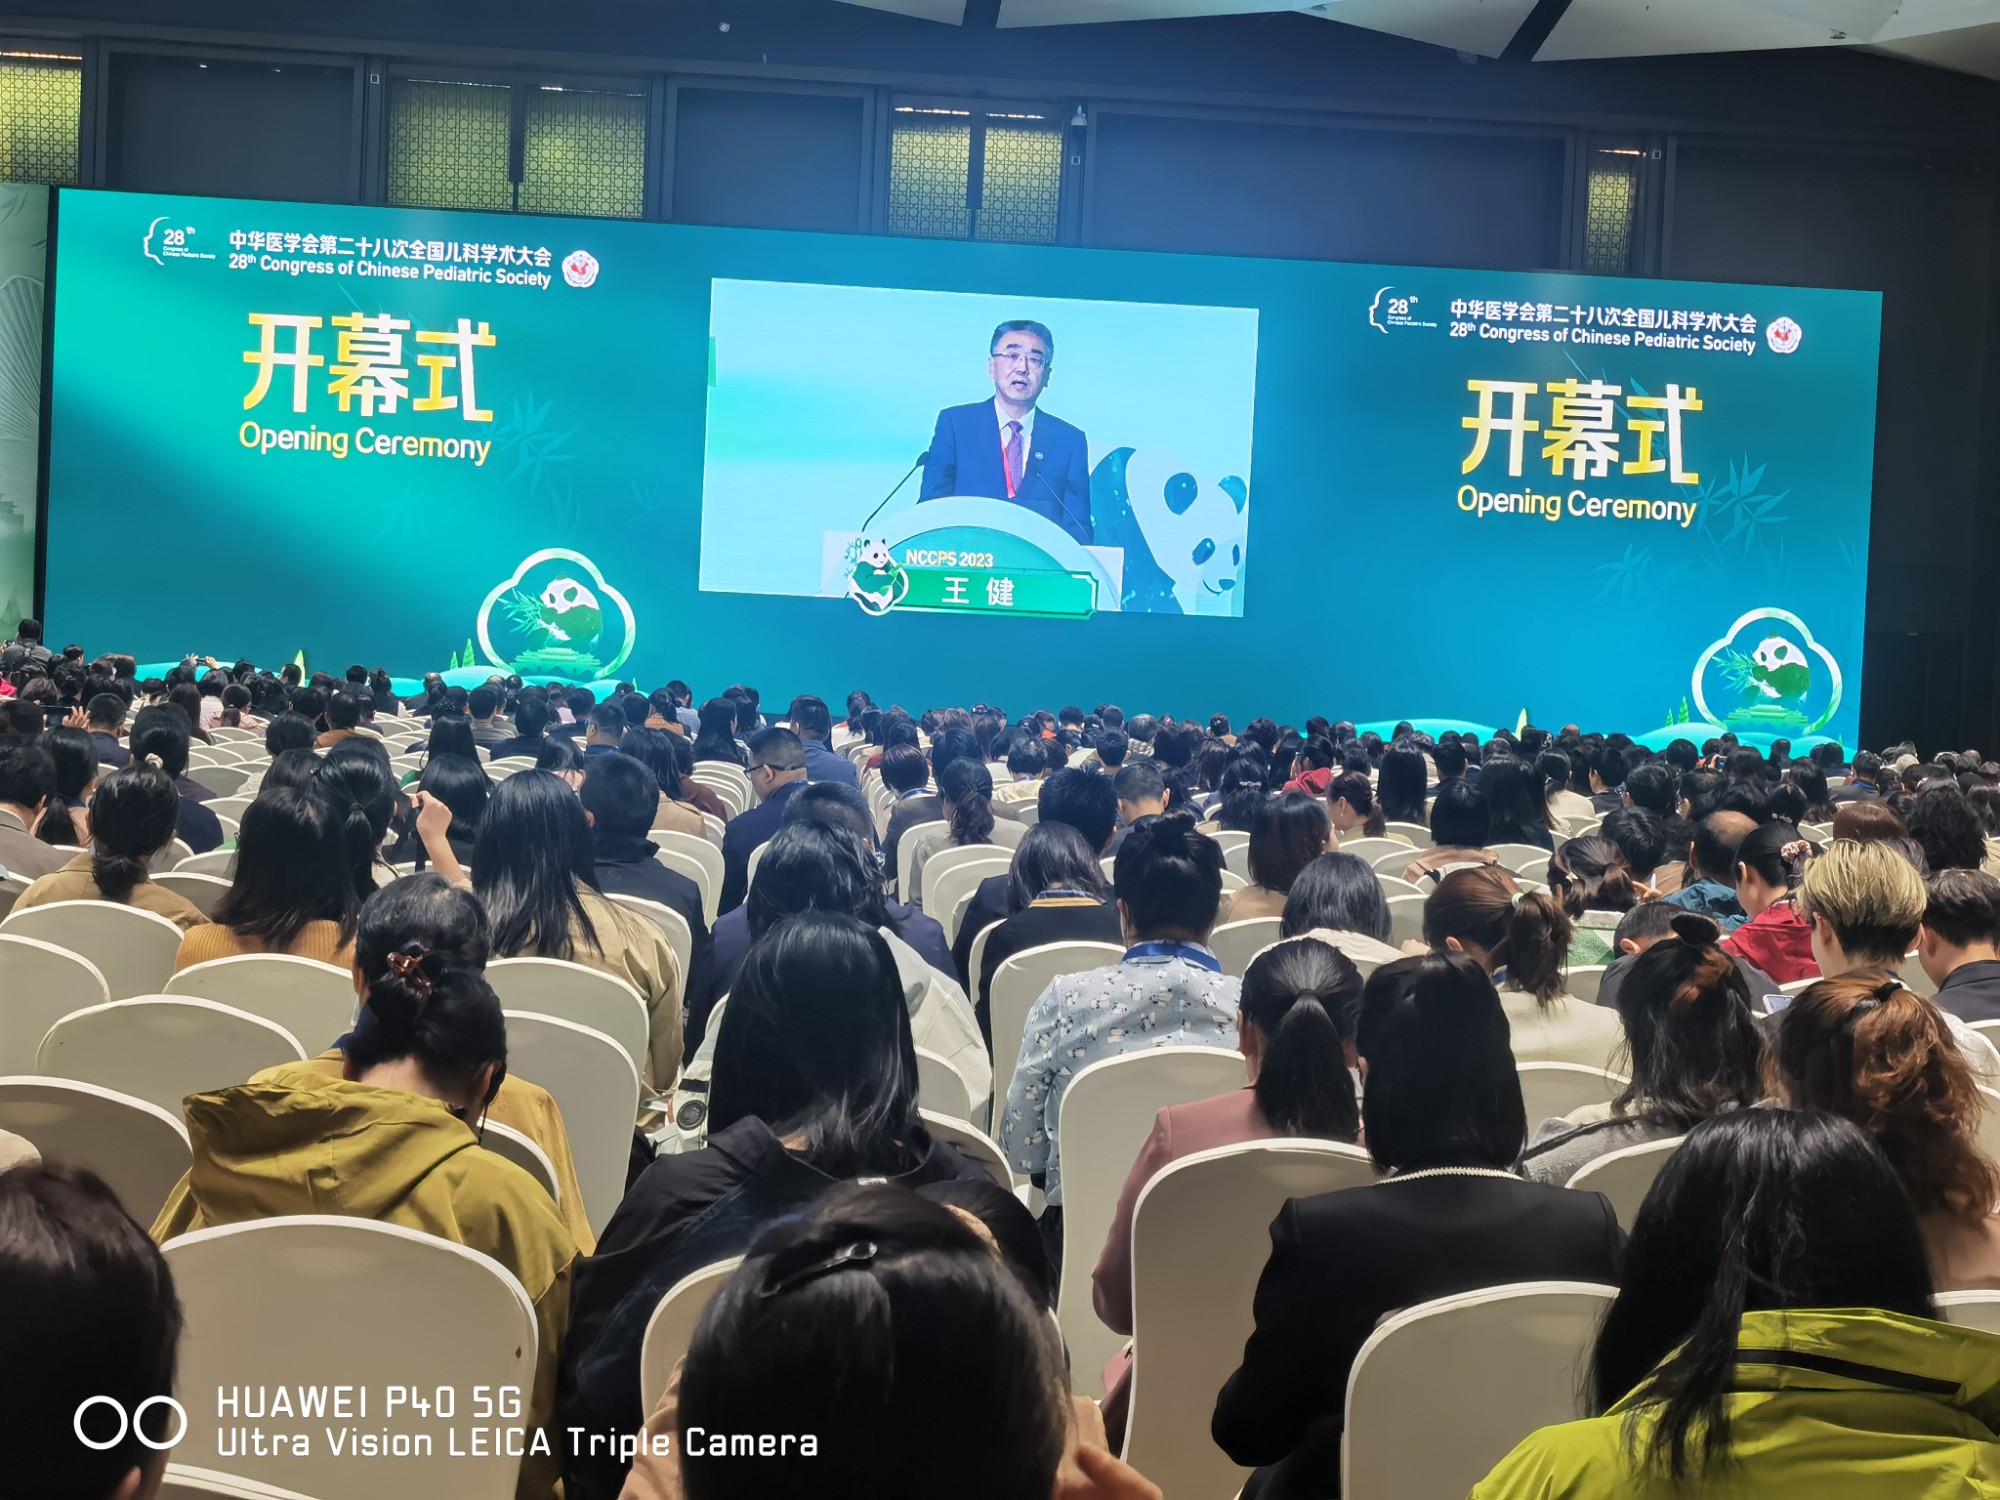 中华医学会第二十八次全国儿科学术大会在成都顺利召开